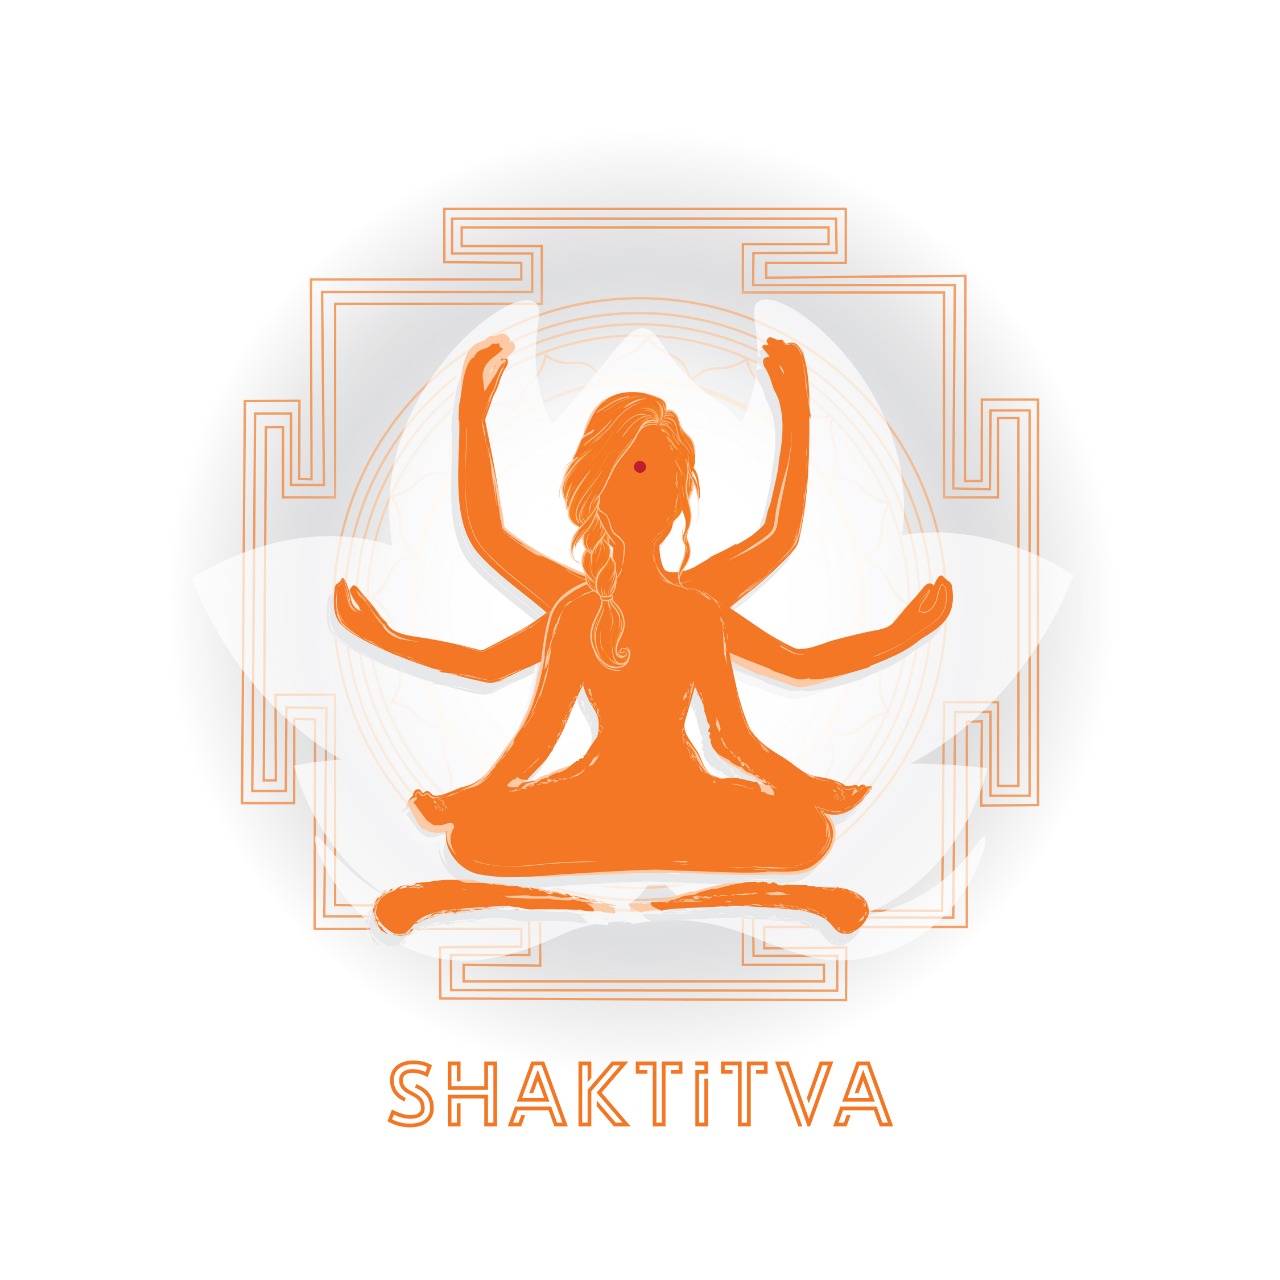 Grant to Shaktitiva Foundation